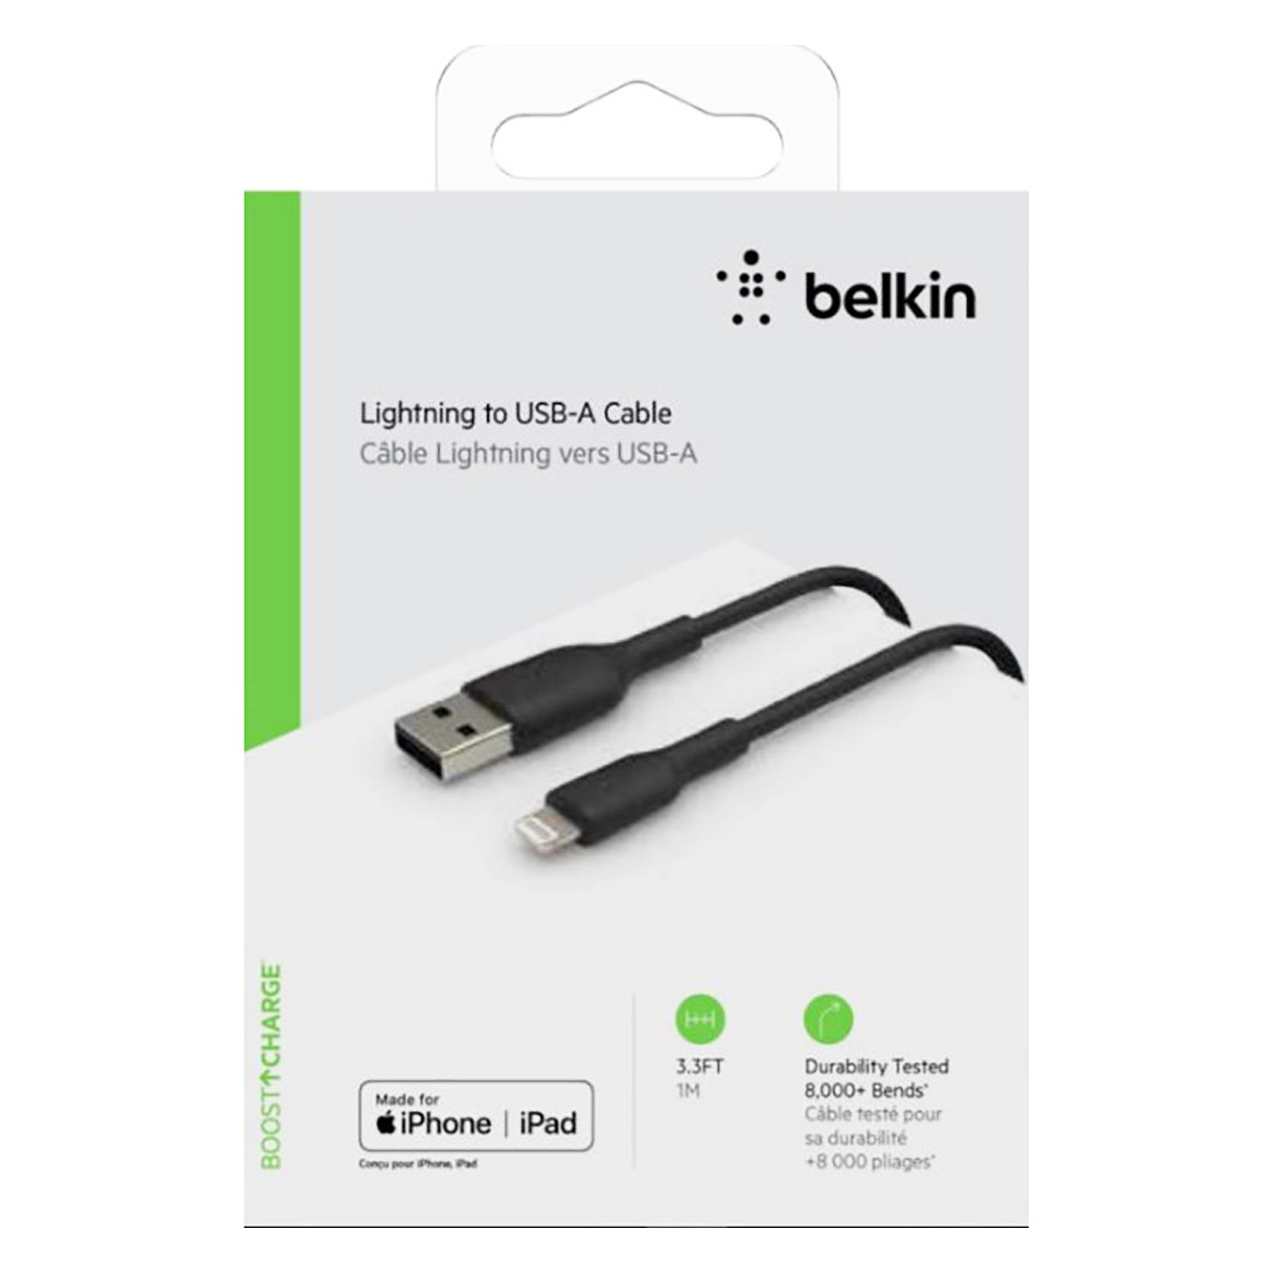 کابل شارژ بلکین Belkin مدل Lightning to USB-A